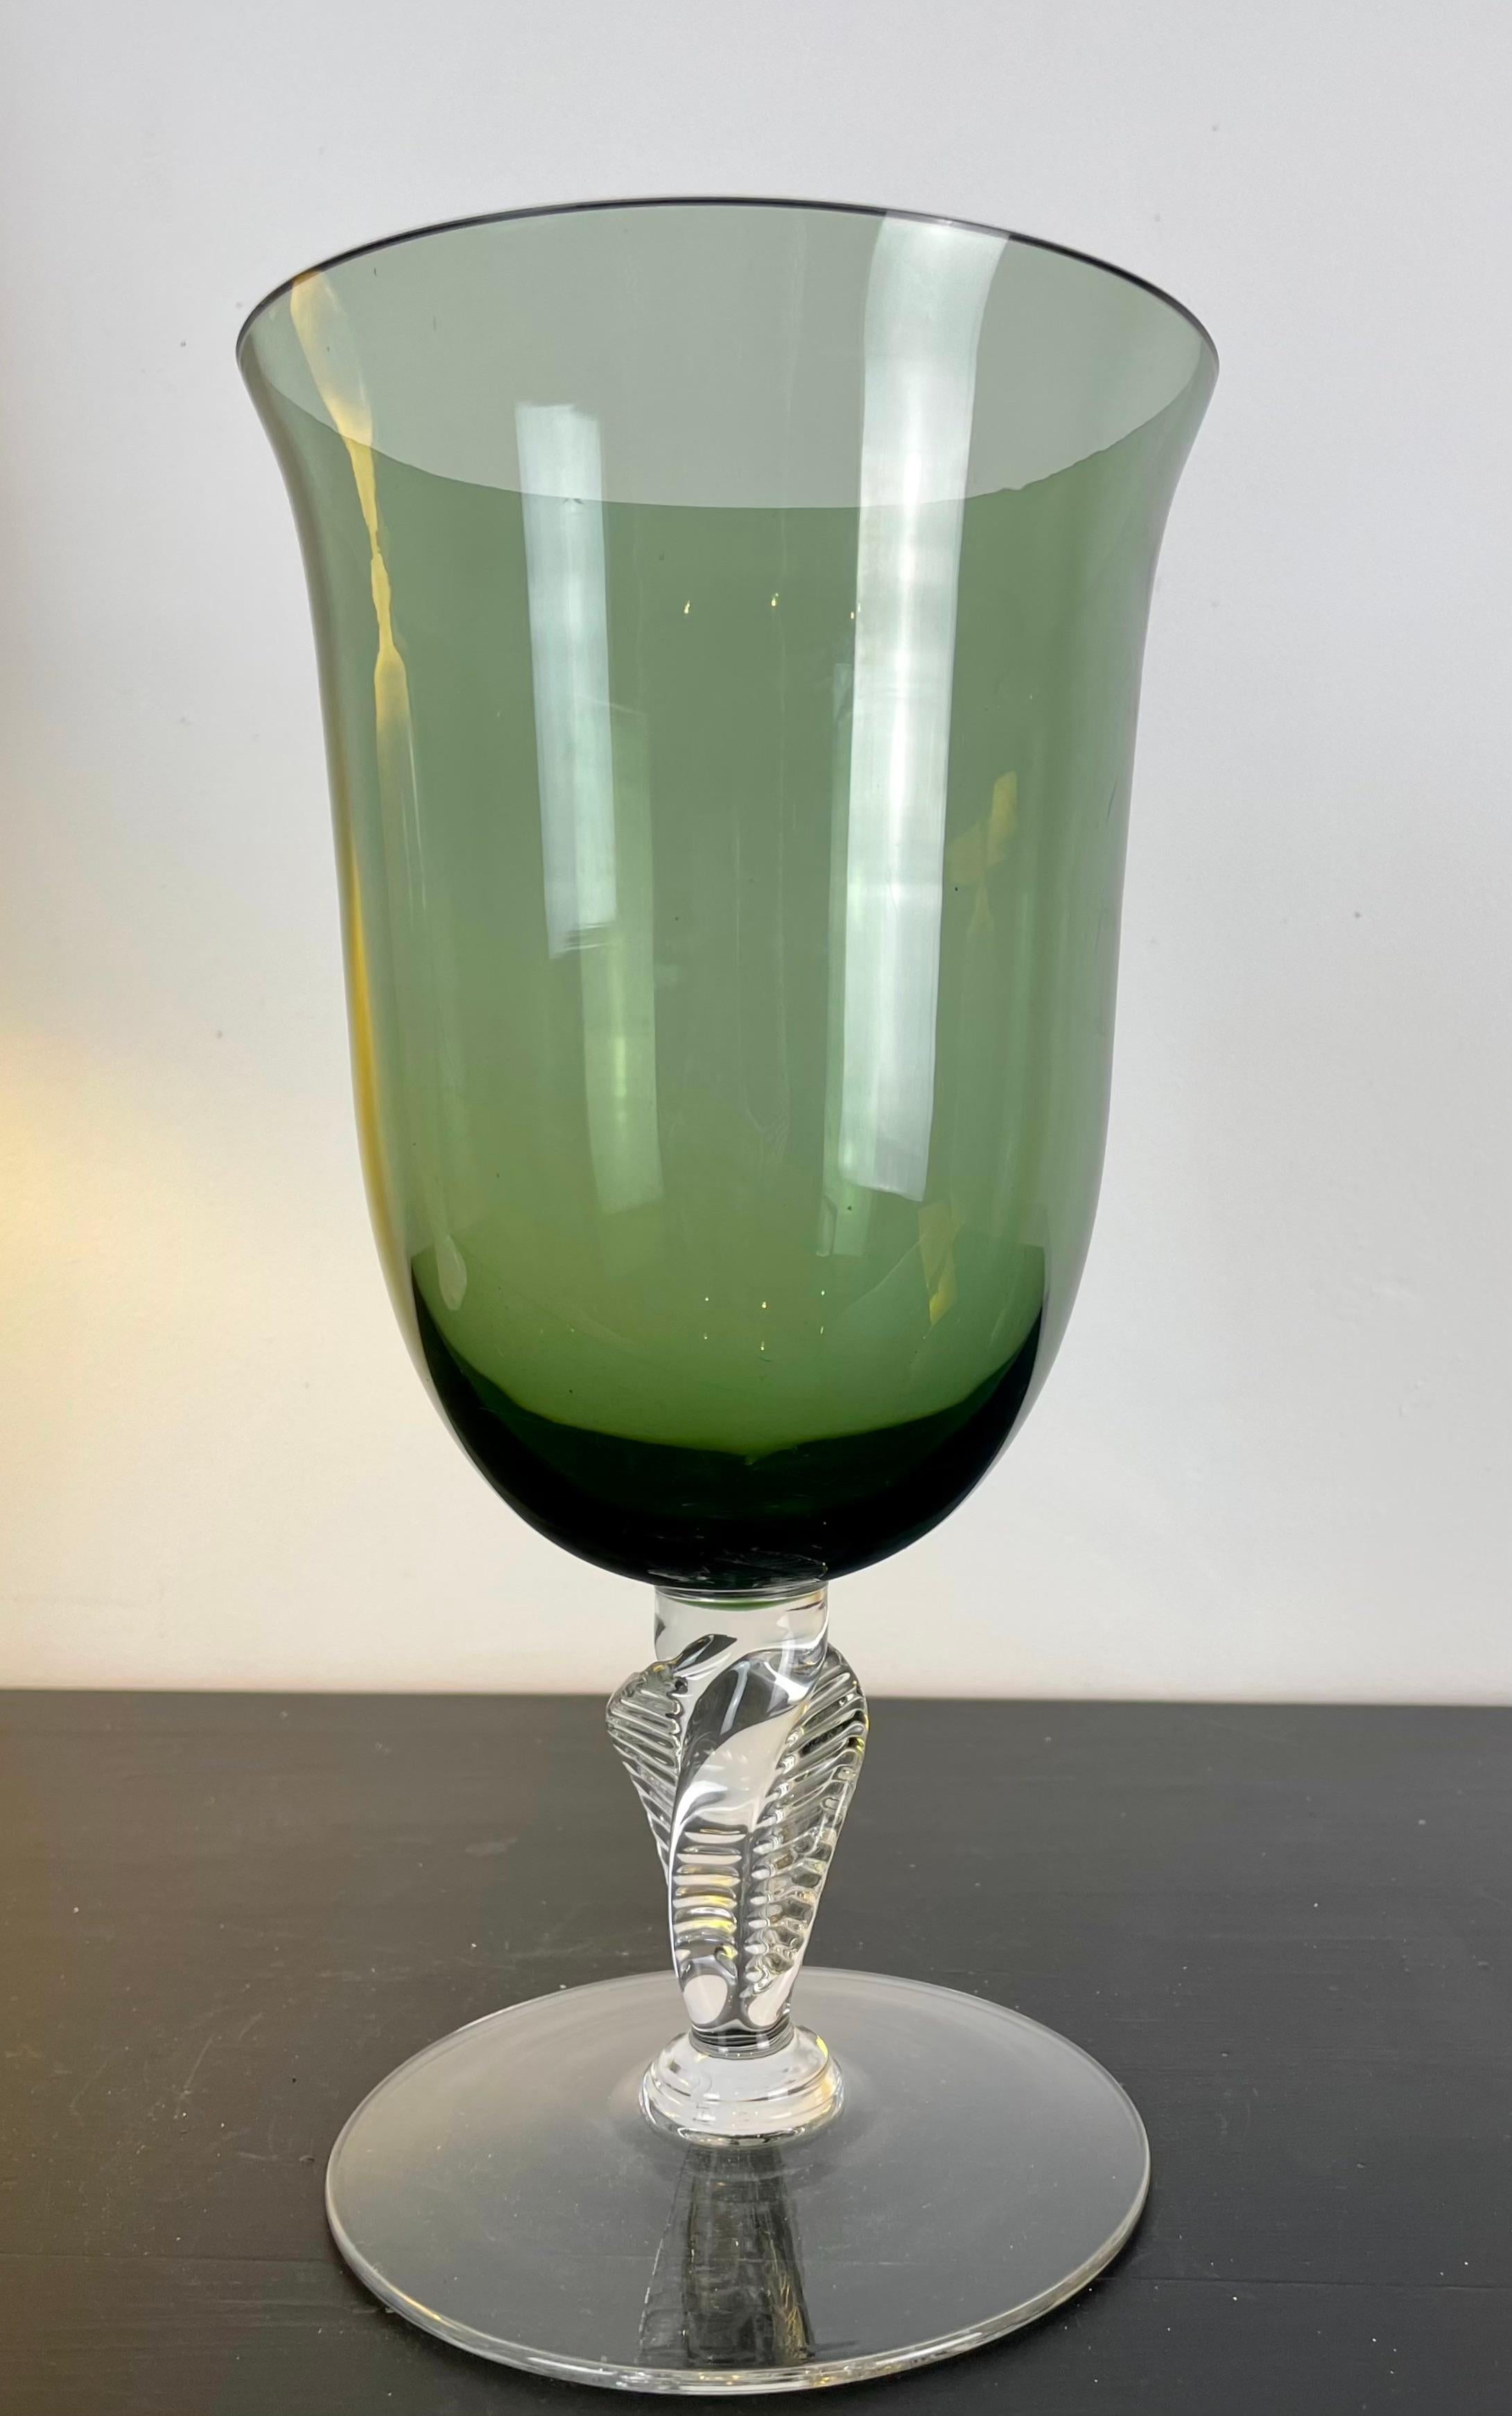 Elegante Glasvase/-schale, gedrehter Fuß aus transparentem Glas.
Der Becher ist aus grünem, durchscheinendem Glas gefertigt.
Geblasenes Glas.
Im Stil von Baccarat oder Murano-Kristall.
Ein winziger Chip um den Rand der Tasse, fast unsichtbar.
Schöne